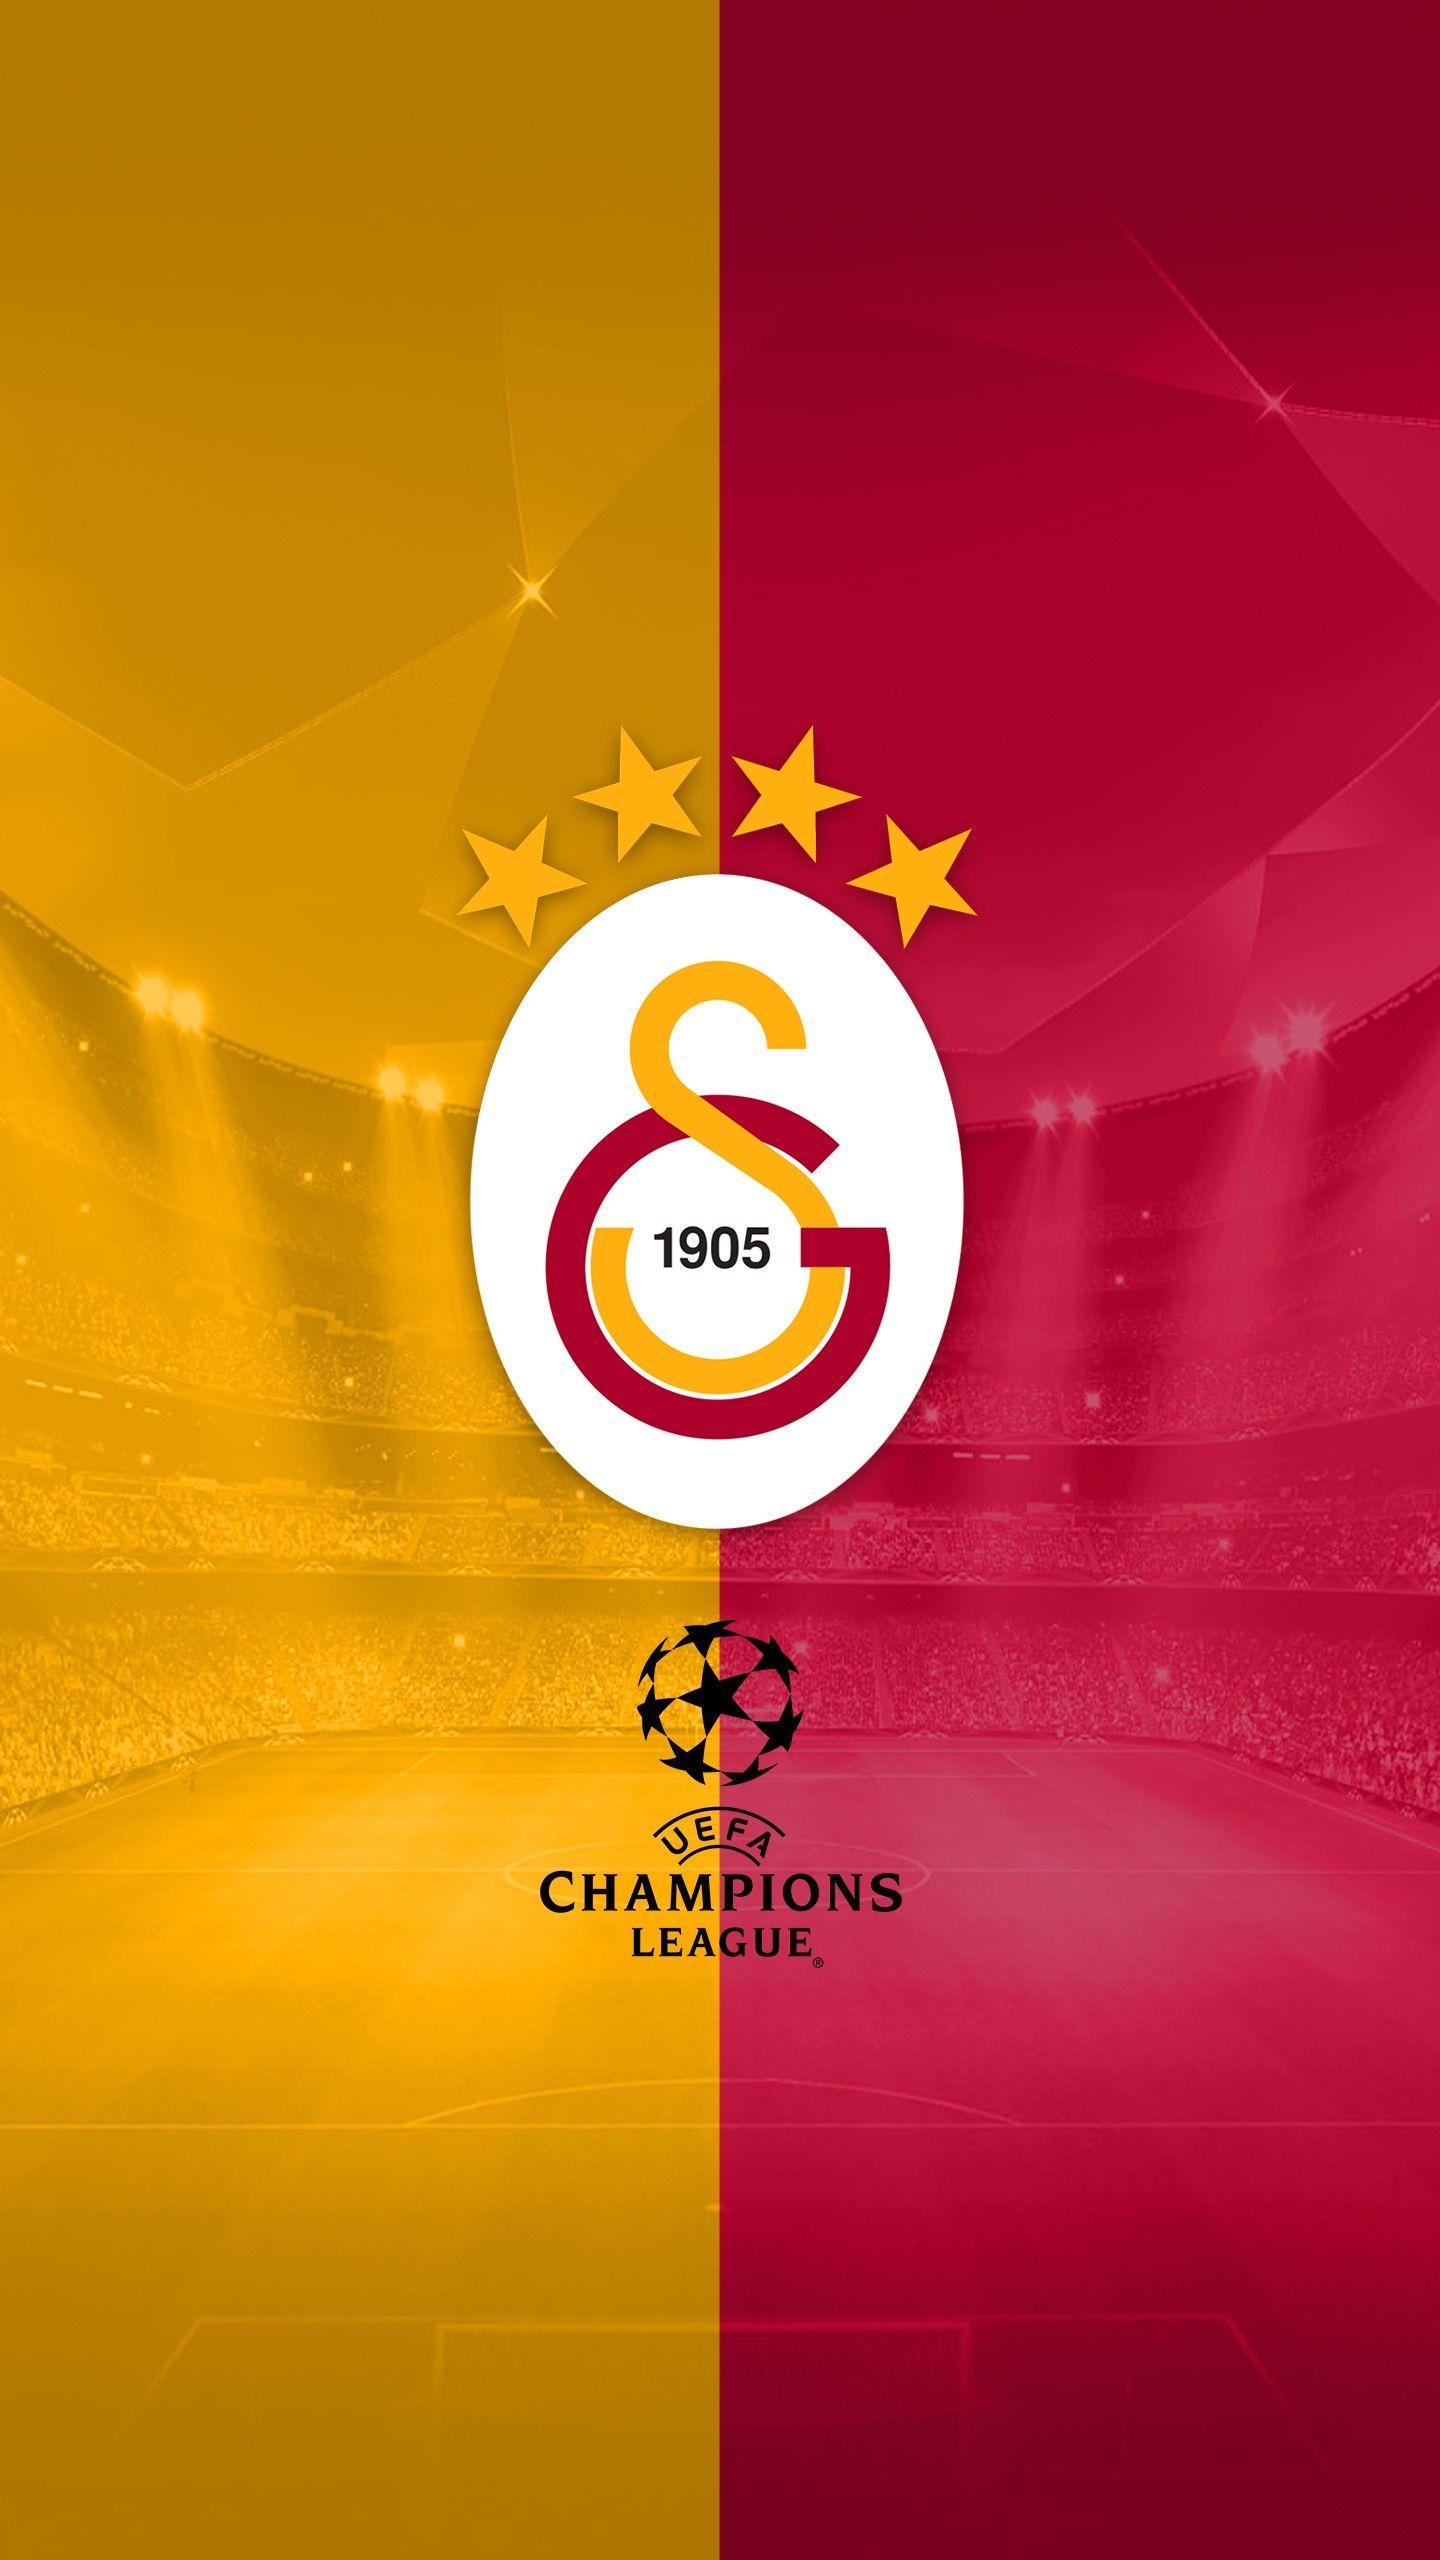 Galatasaray Logo - Wallpaper : illustration, text, logo, circle, soccer, Galatasaray